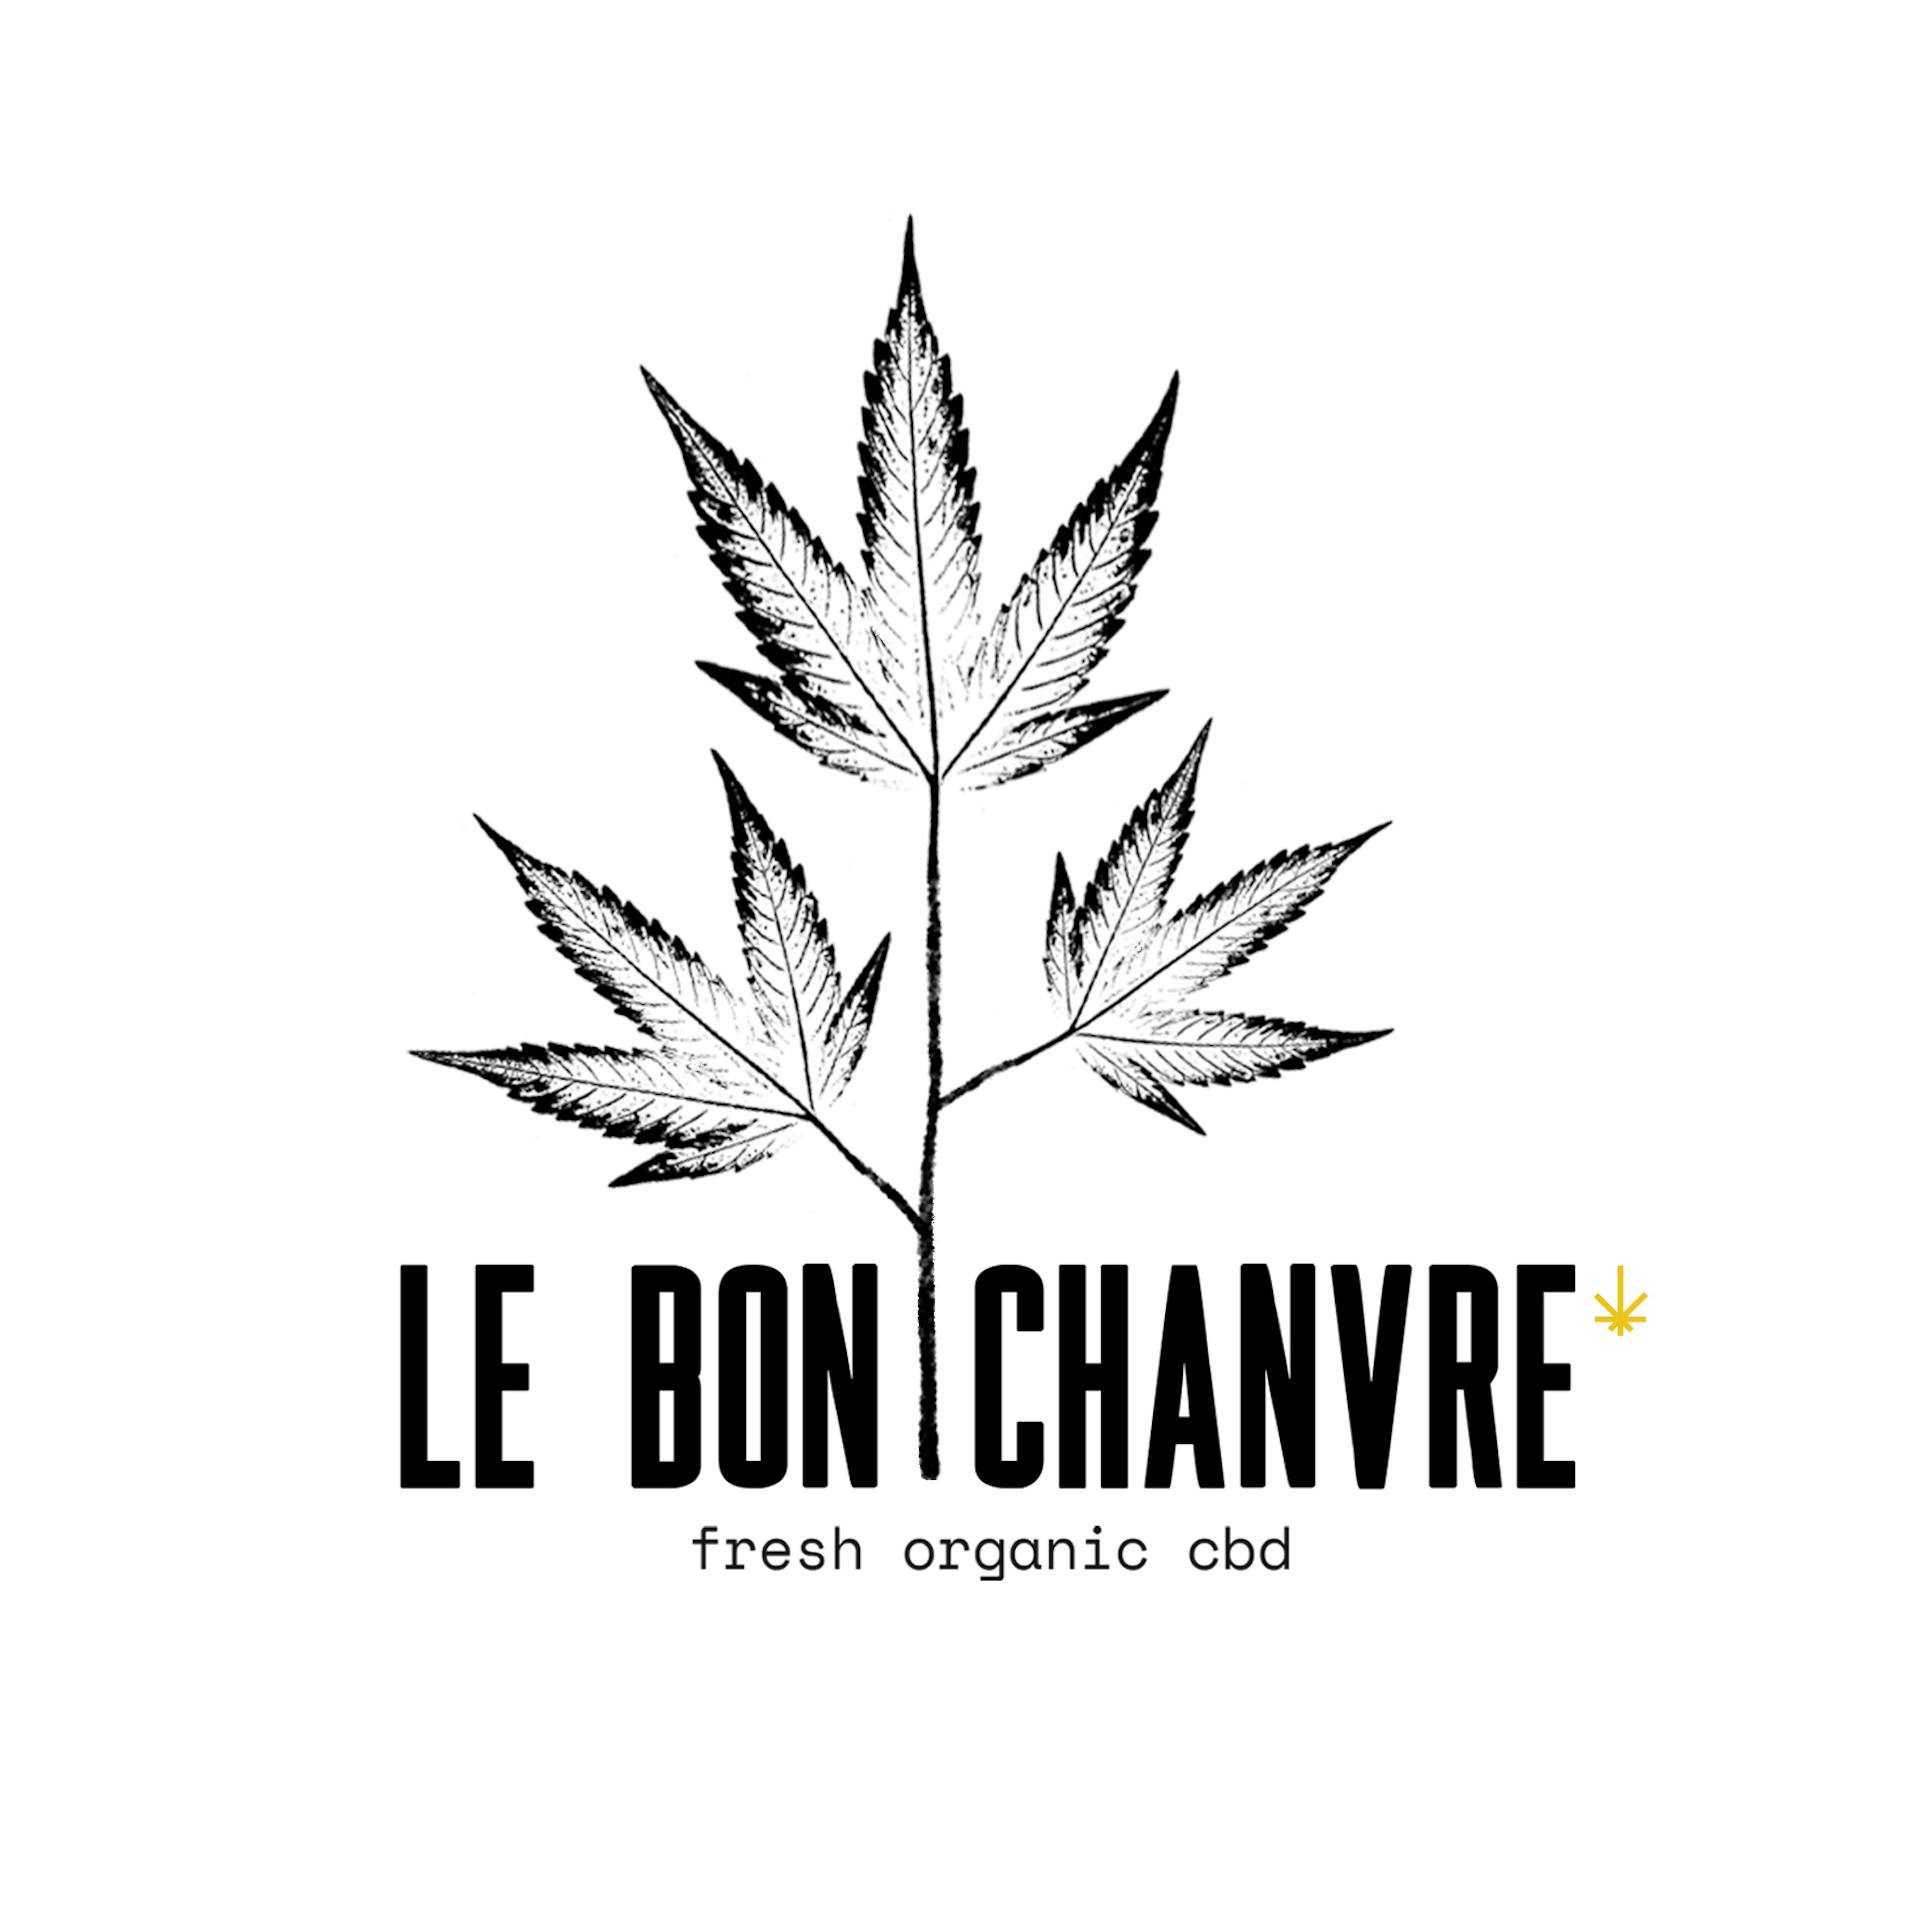 Nouveau logo issu  du design de marque et d'identité "Le bon chanvre", entreprise de CBD bio produit en France.